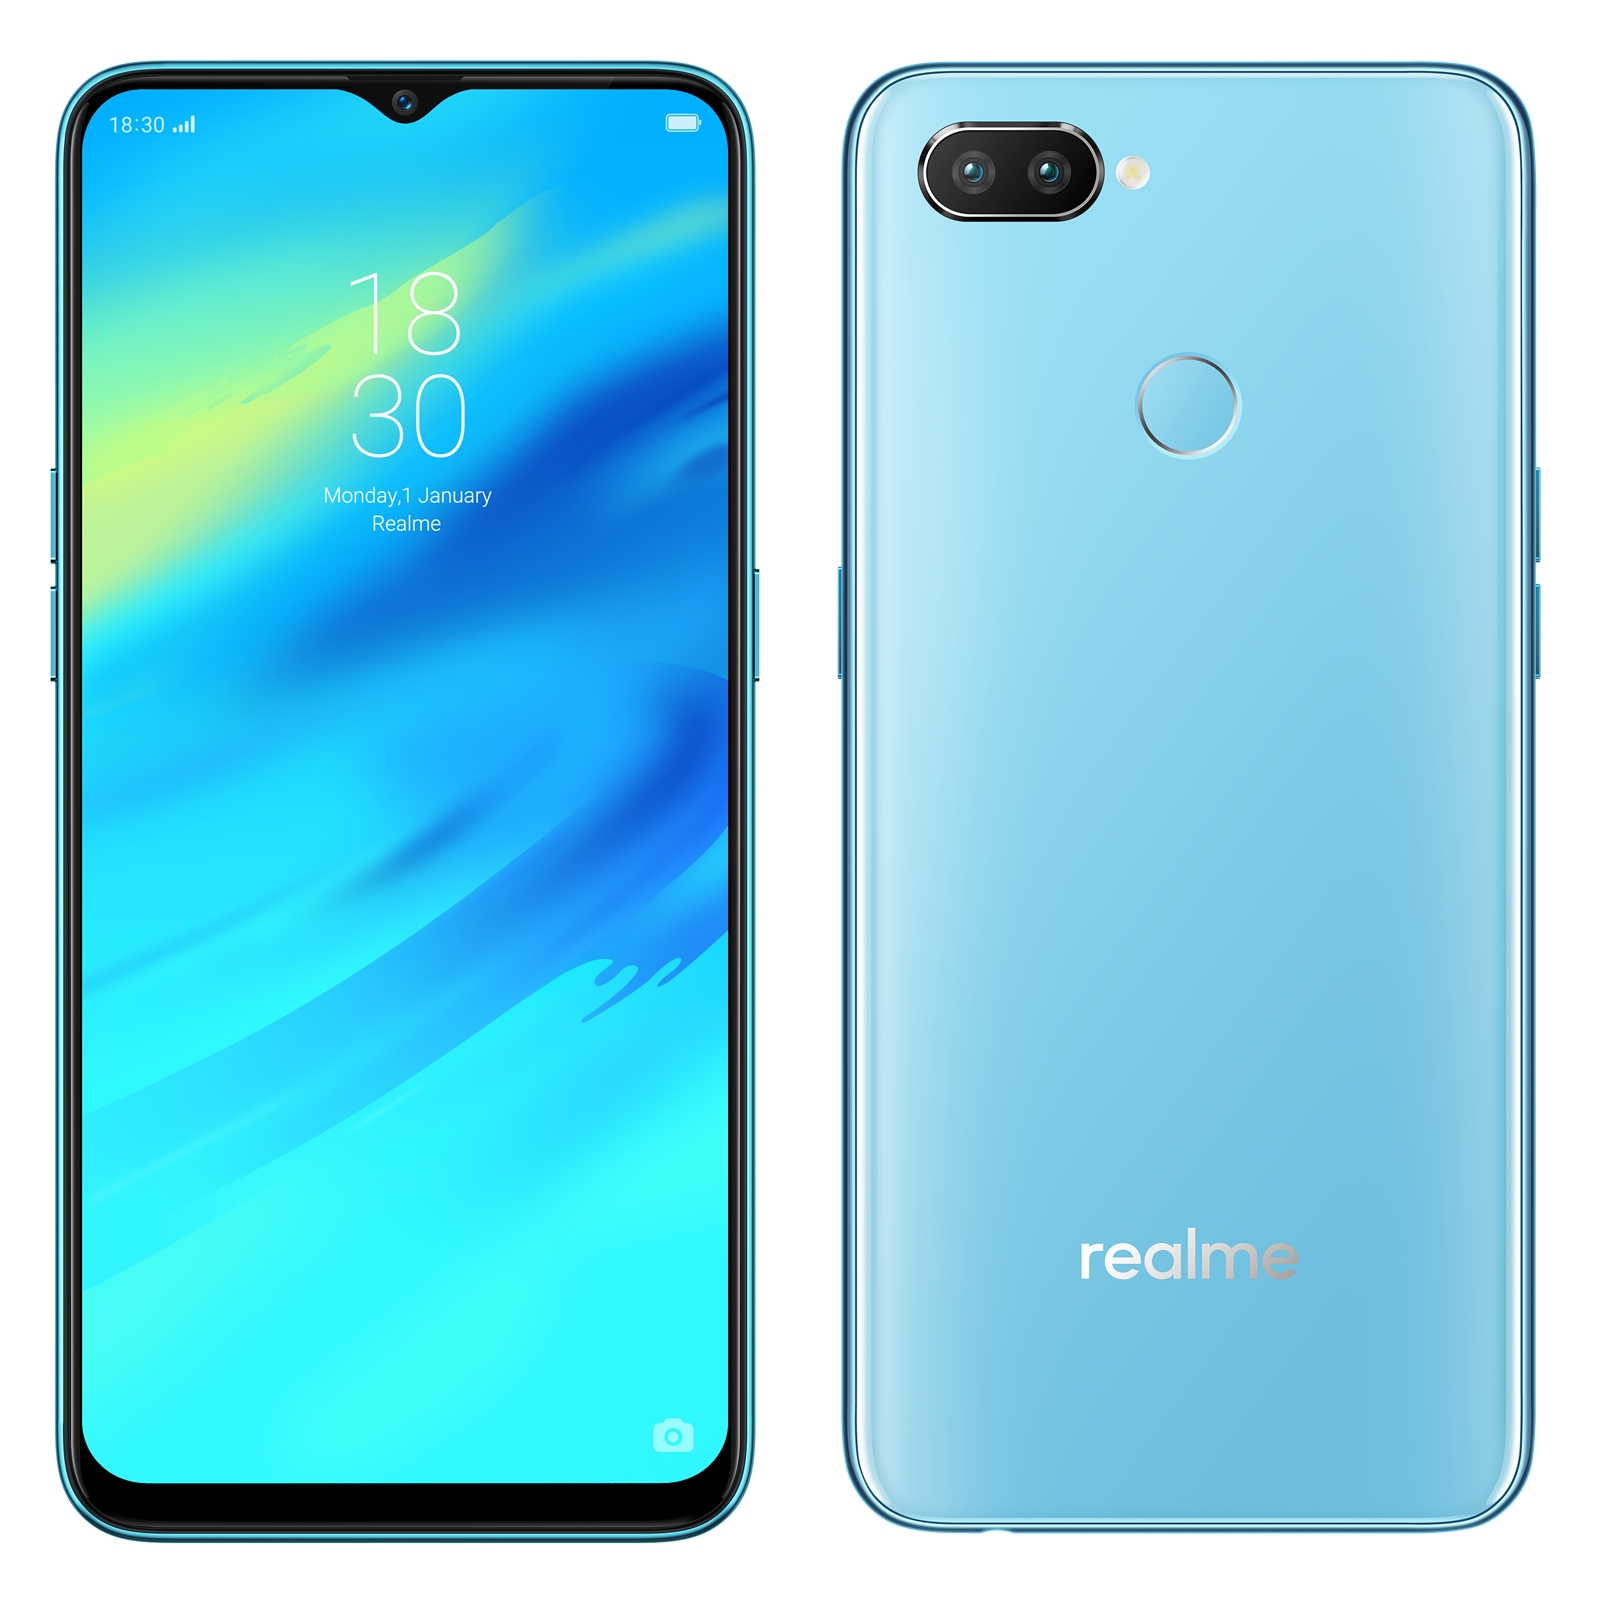 Realme xác nhận sẽ có ít nhất hai sản phẩm mở bán trong tháng 10 tại thị trường VN: Realme 2 và Realme 2 Pro